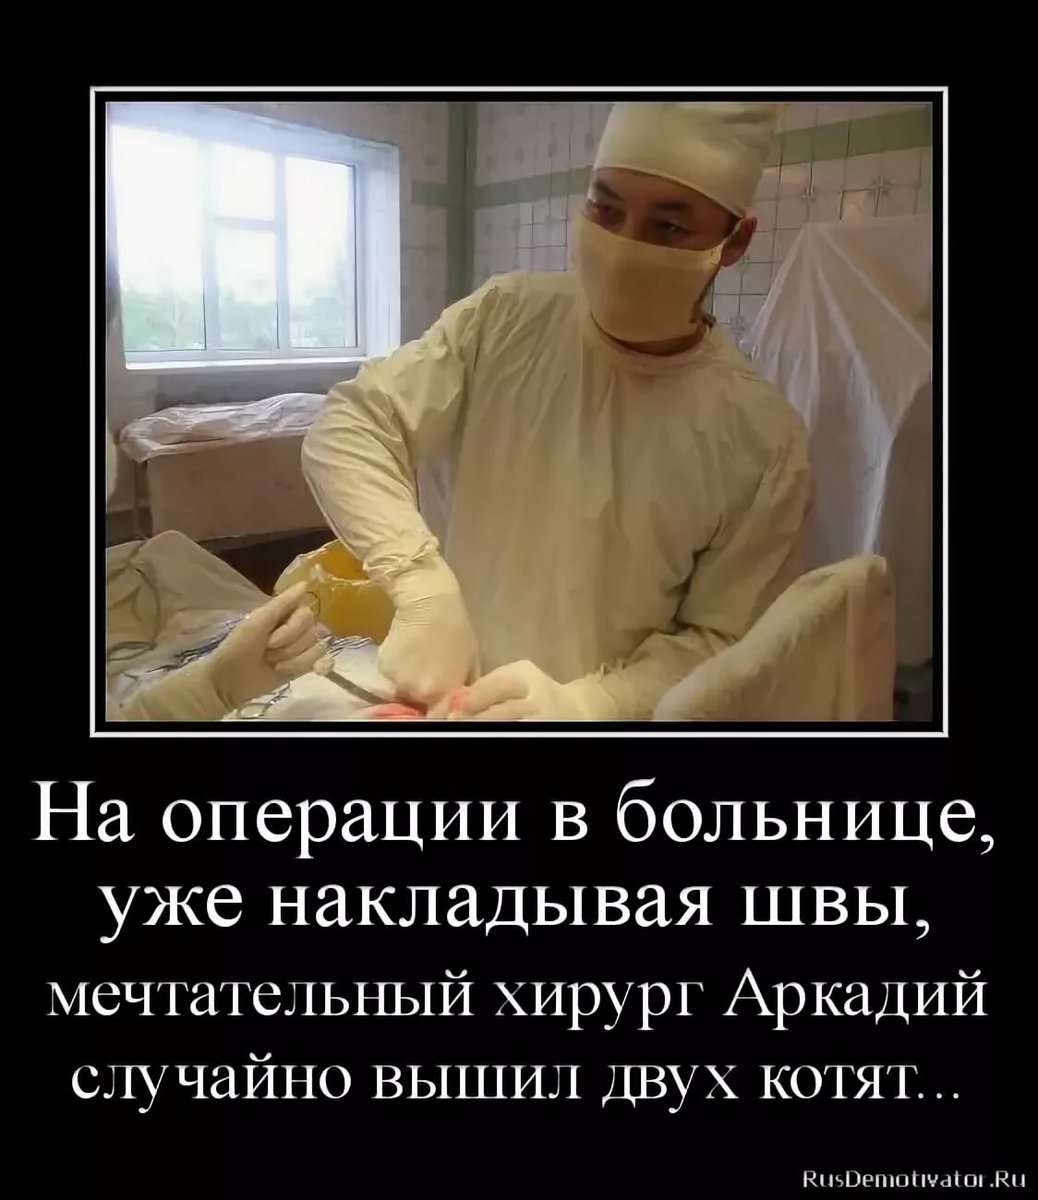 Картинки перед операцией. Смешное про медиков. Анекдоты про операцию.